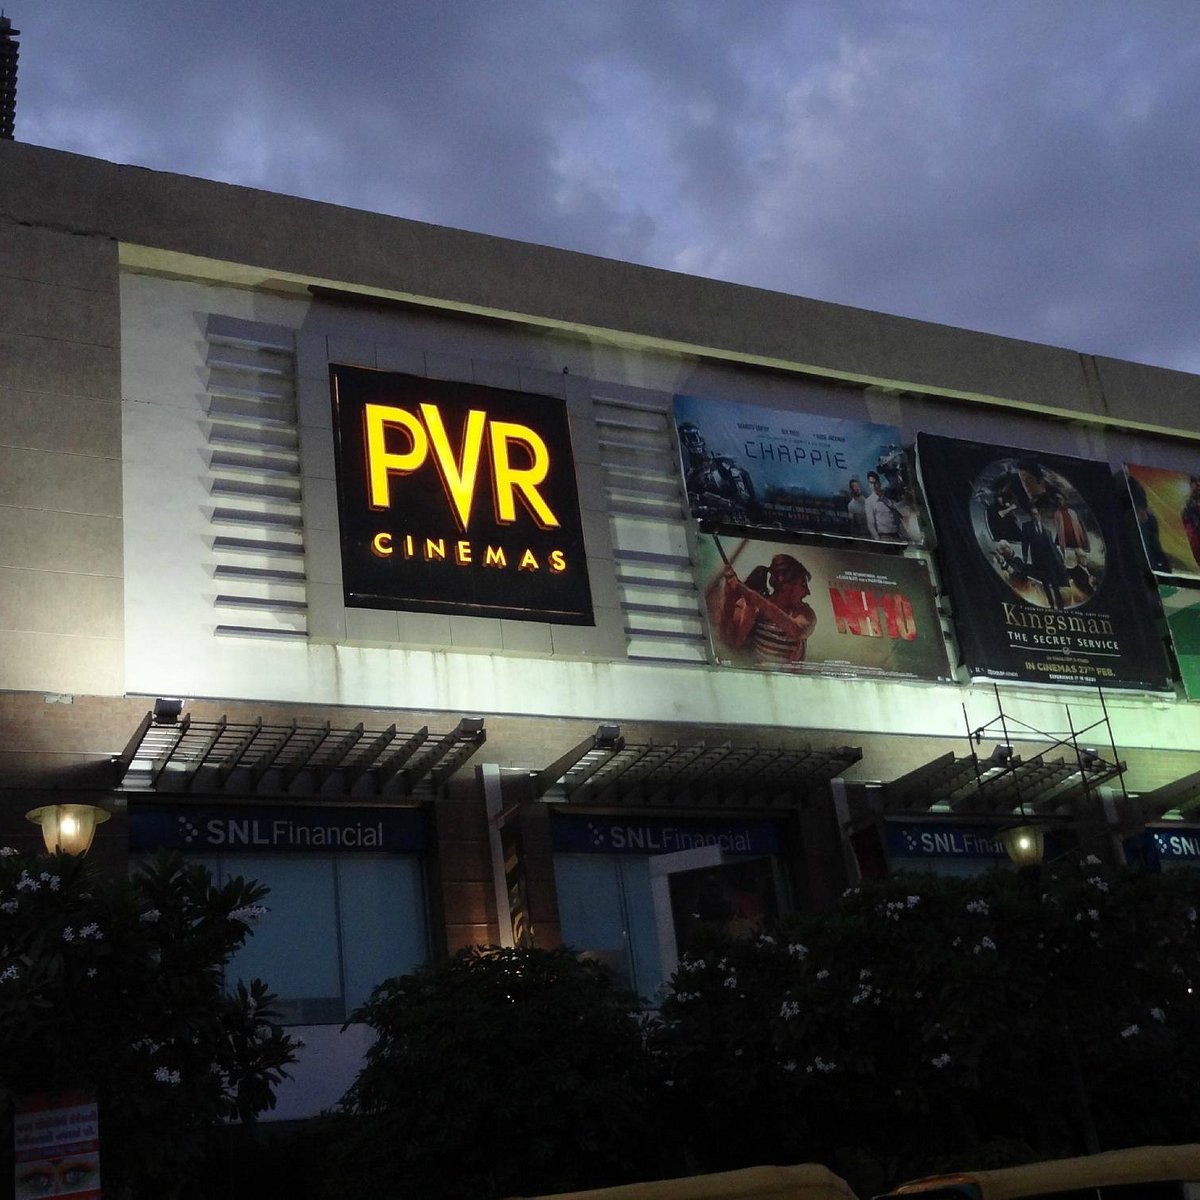 PVR Cinema Advertising in Ludhiana with MediaVox Digital